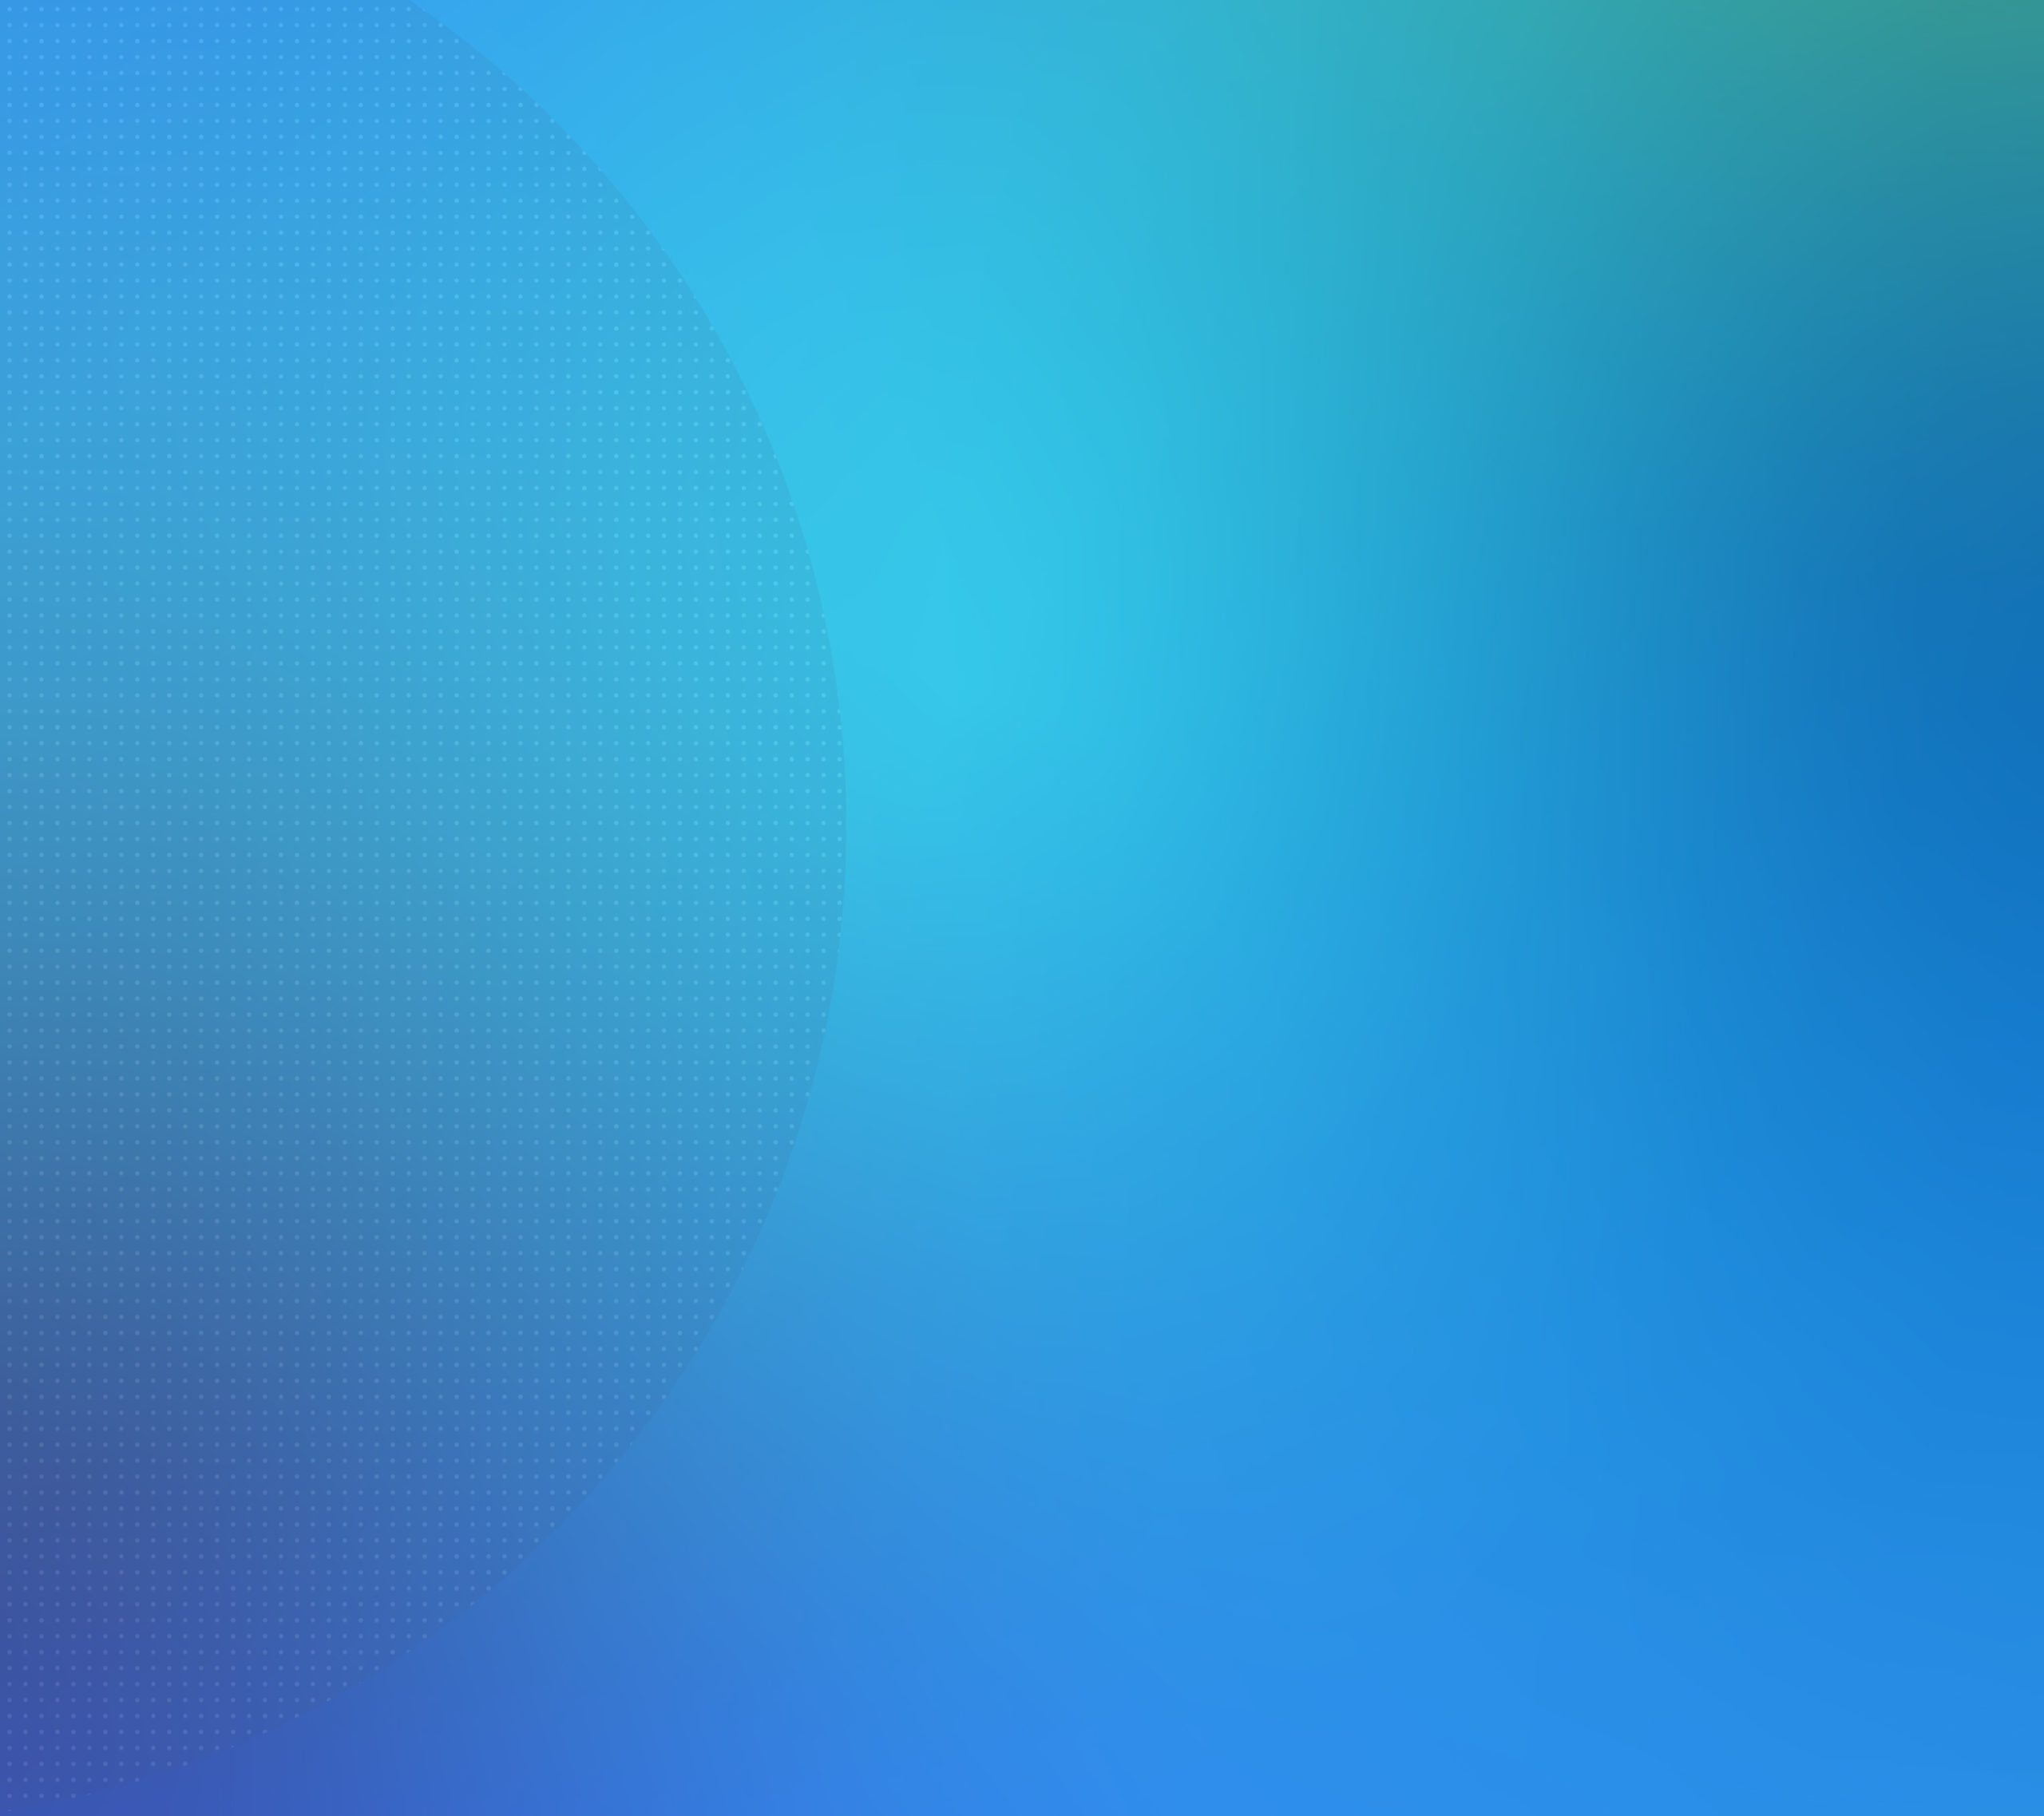 blue gradient background